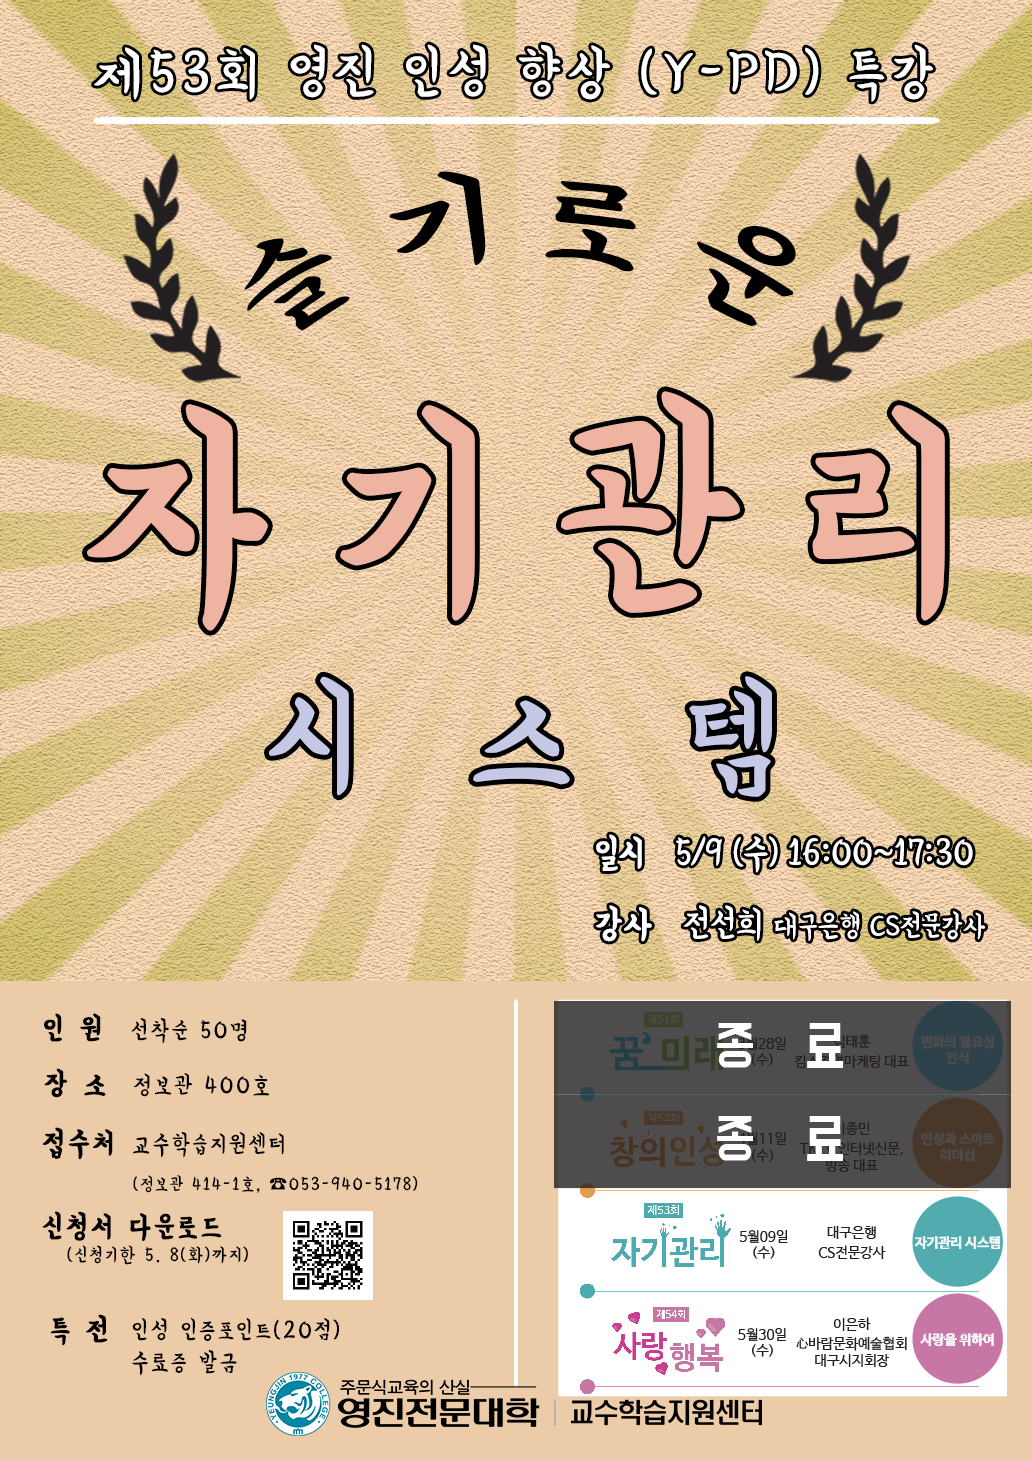 2018-1_제21회 재학생 학습법 특강 포스터.png